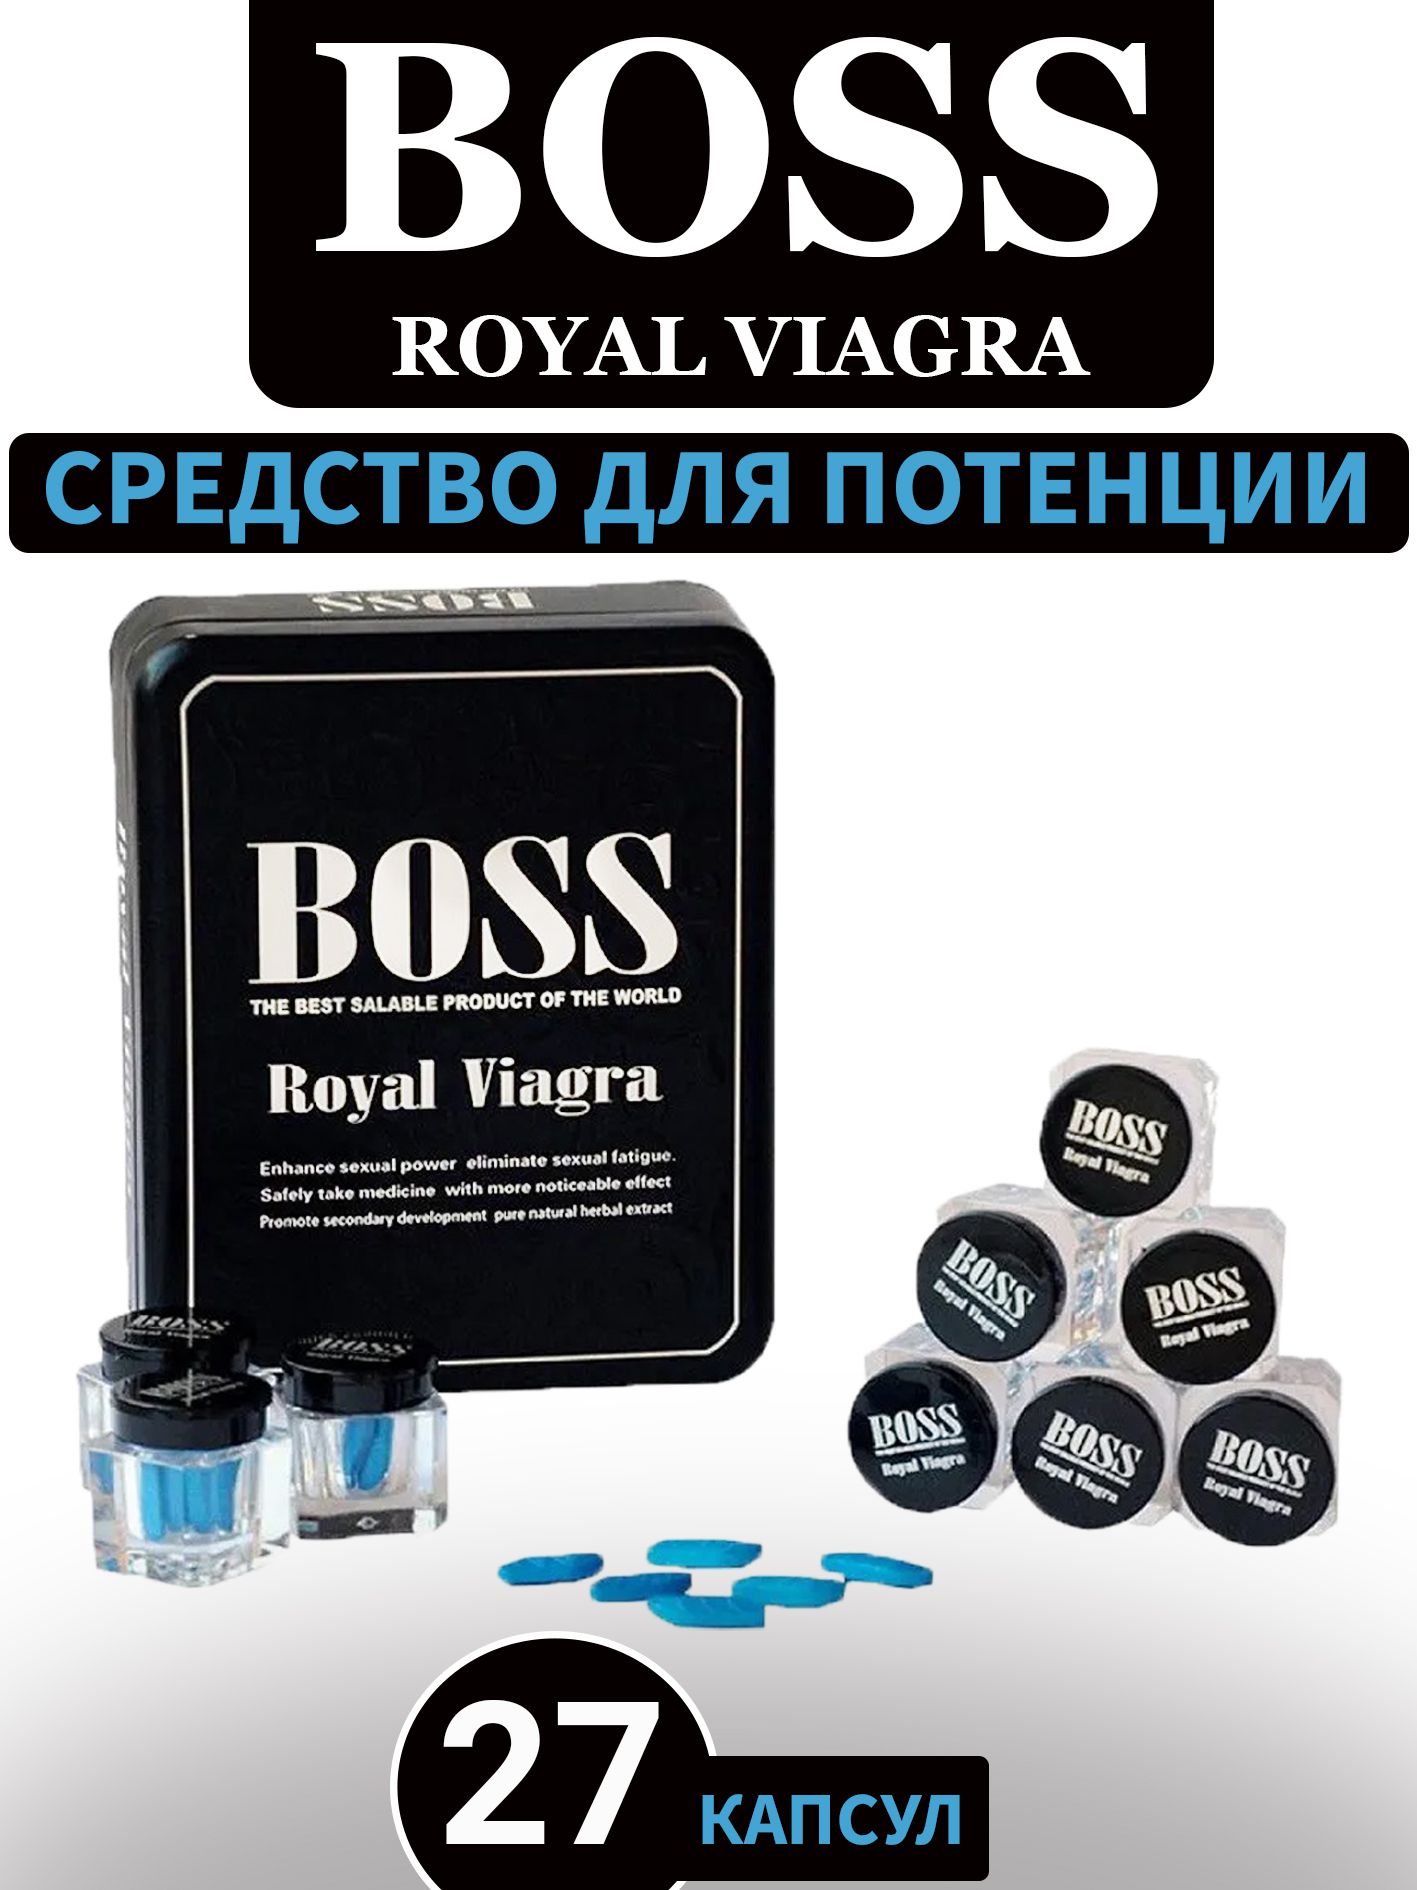 Boss royal босс роял. Препарат Boss Royal viagra. Мужской возбудитель Boss Royal viagra. Босс Роял виагра 27 капсул. БАДЫ для мужчин босс Роял виагра.